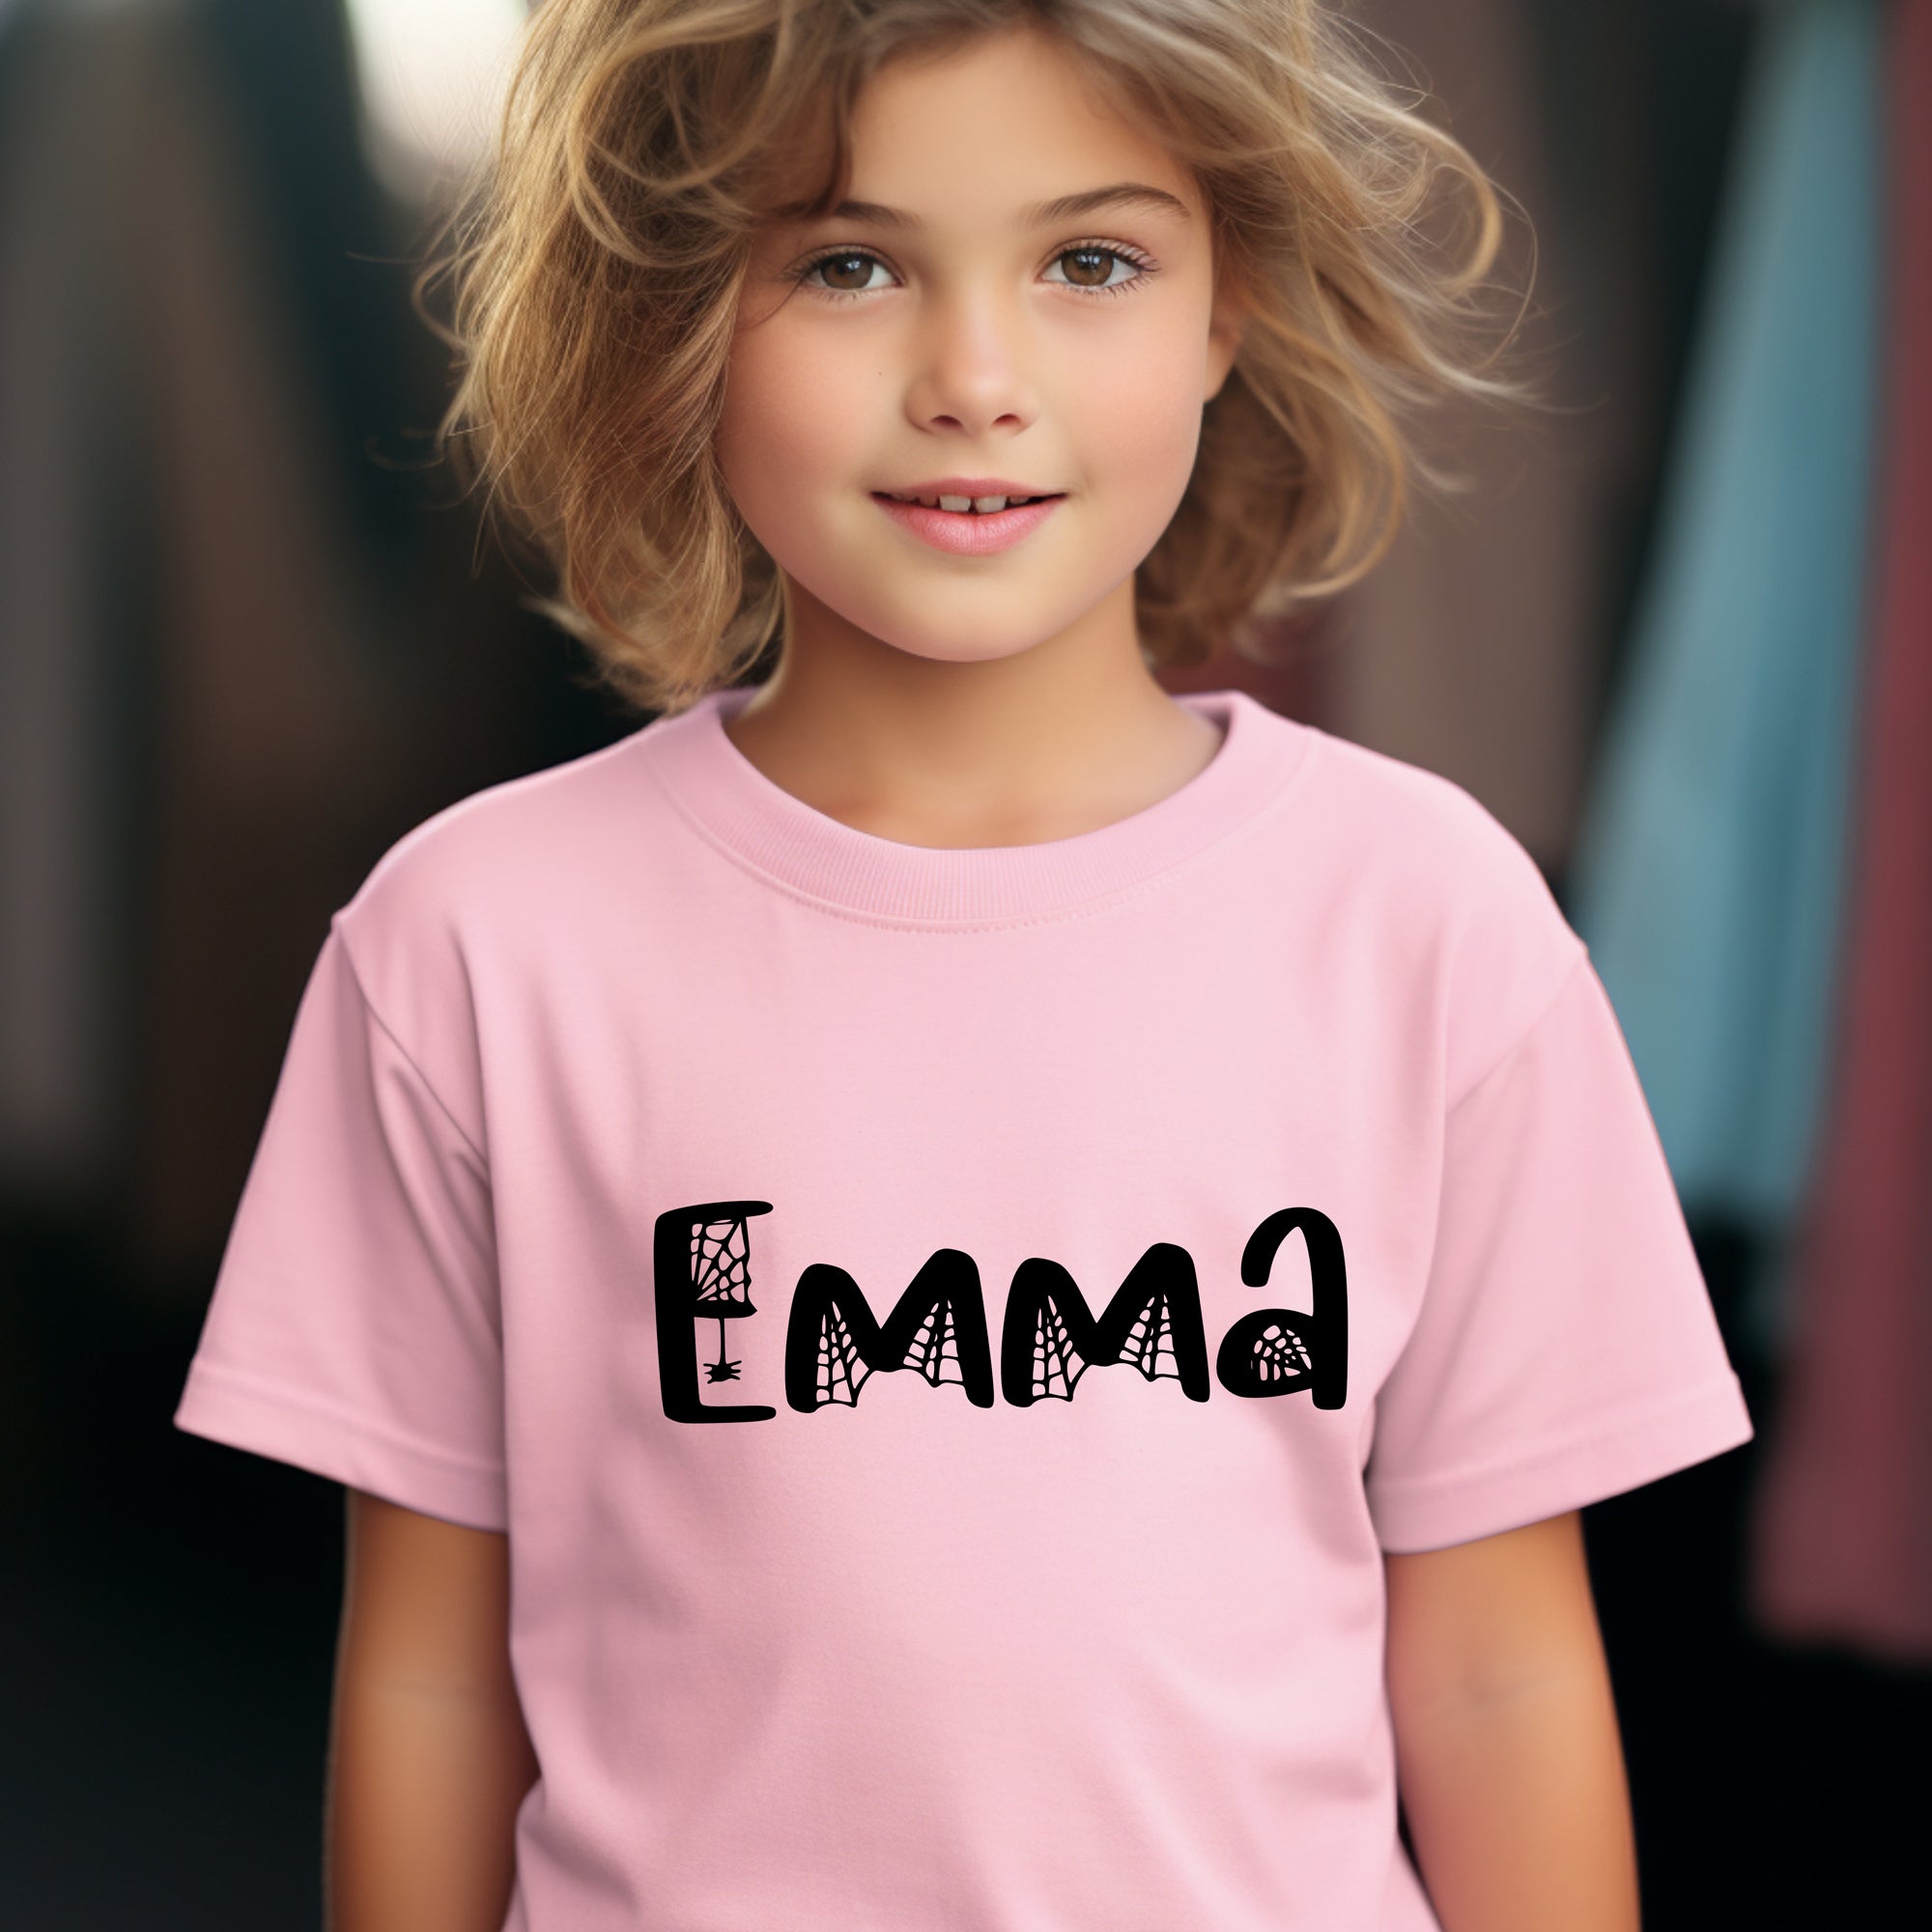 Kids Personalized Web font T-Shirt